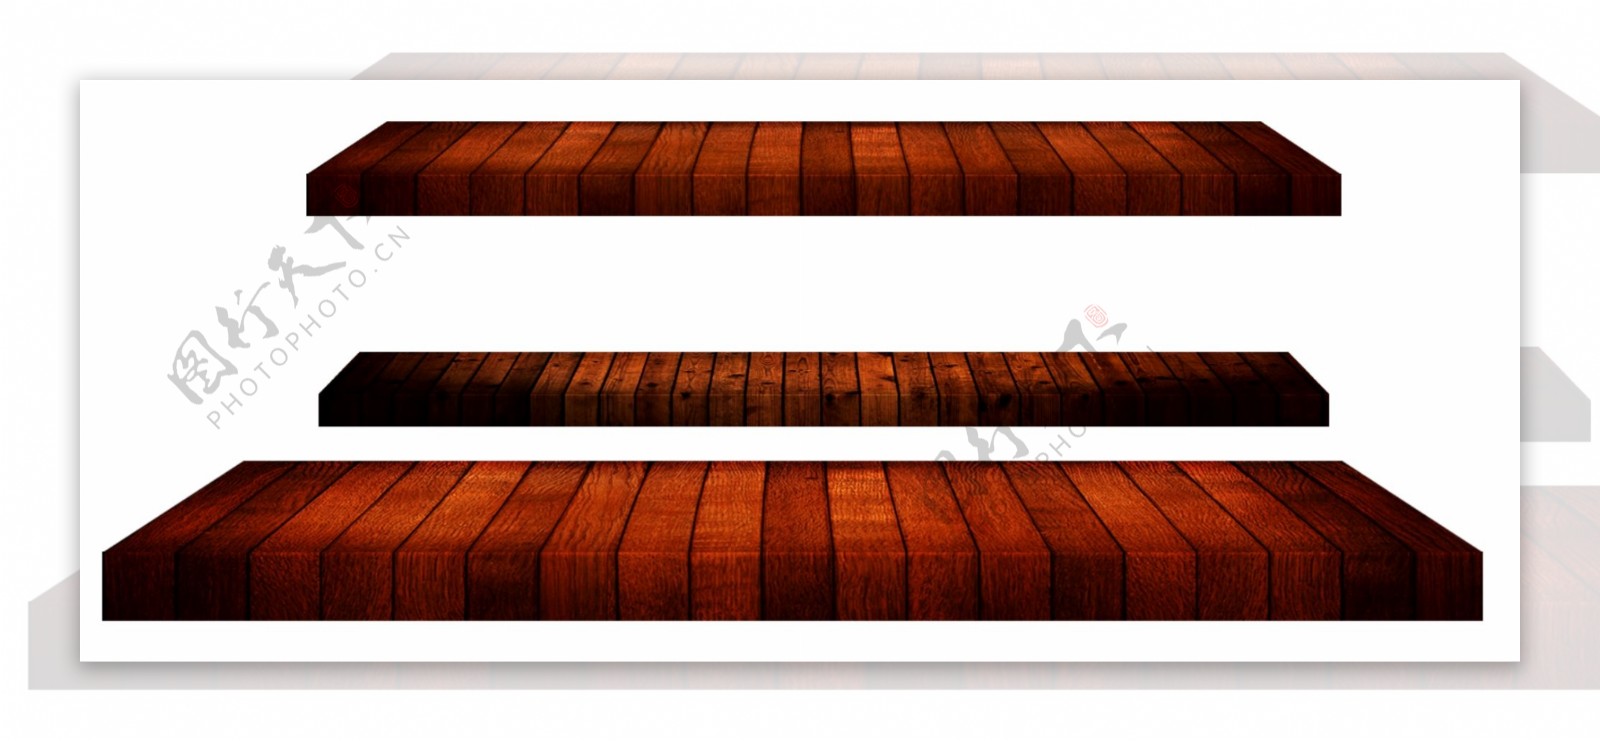 木条拼在一起的木板